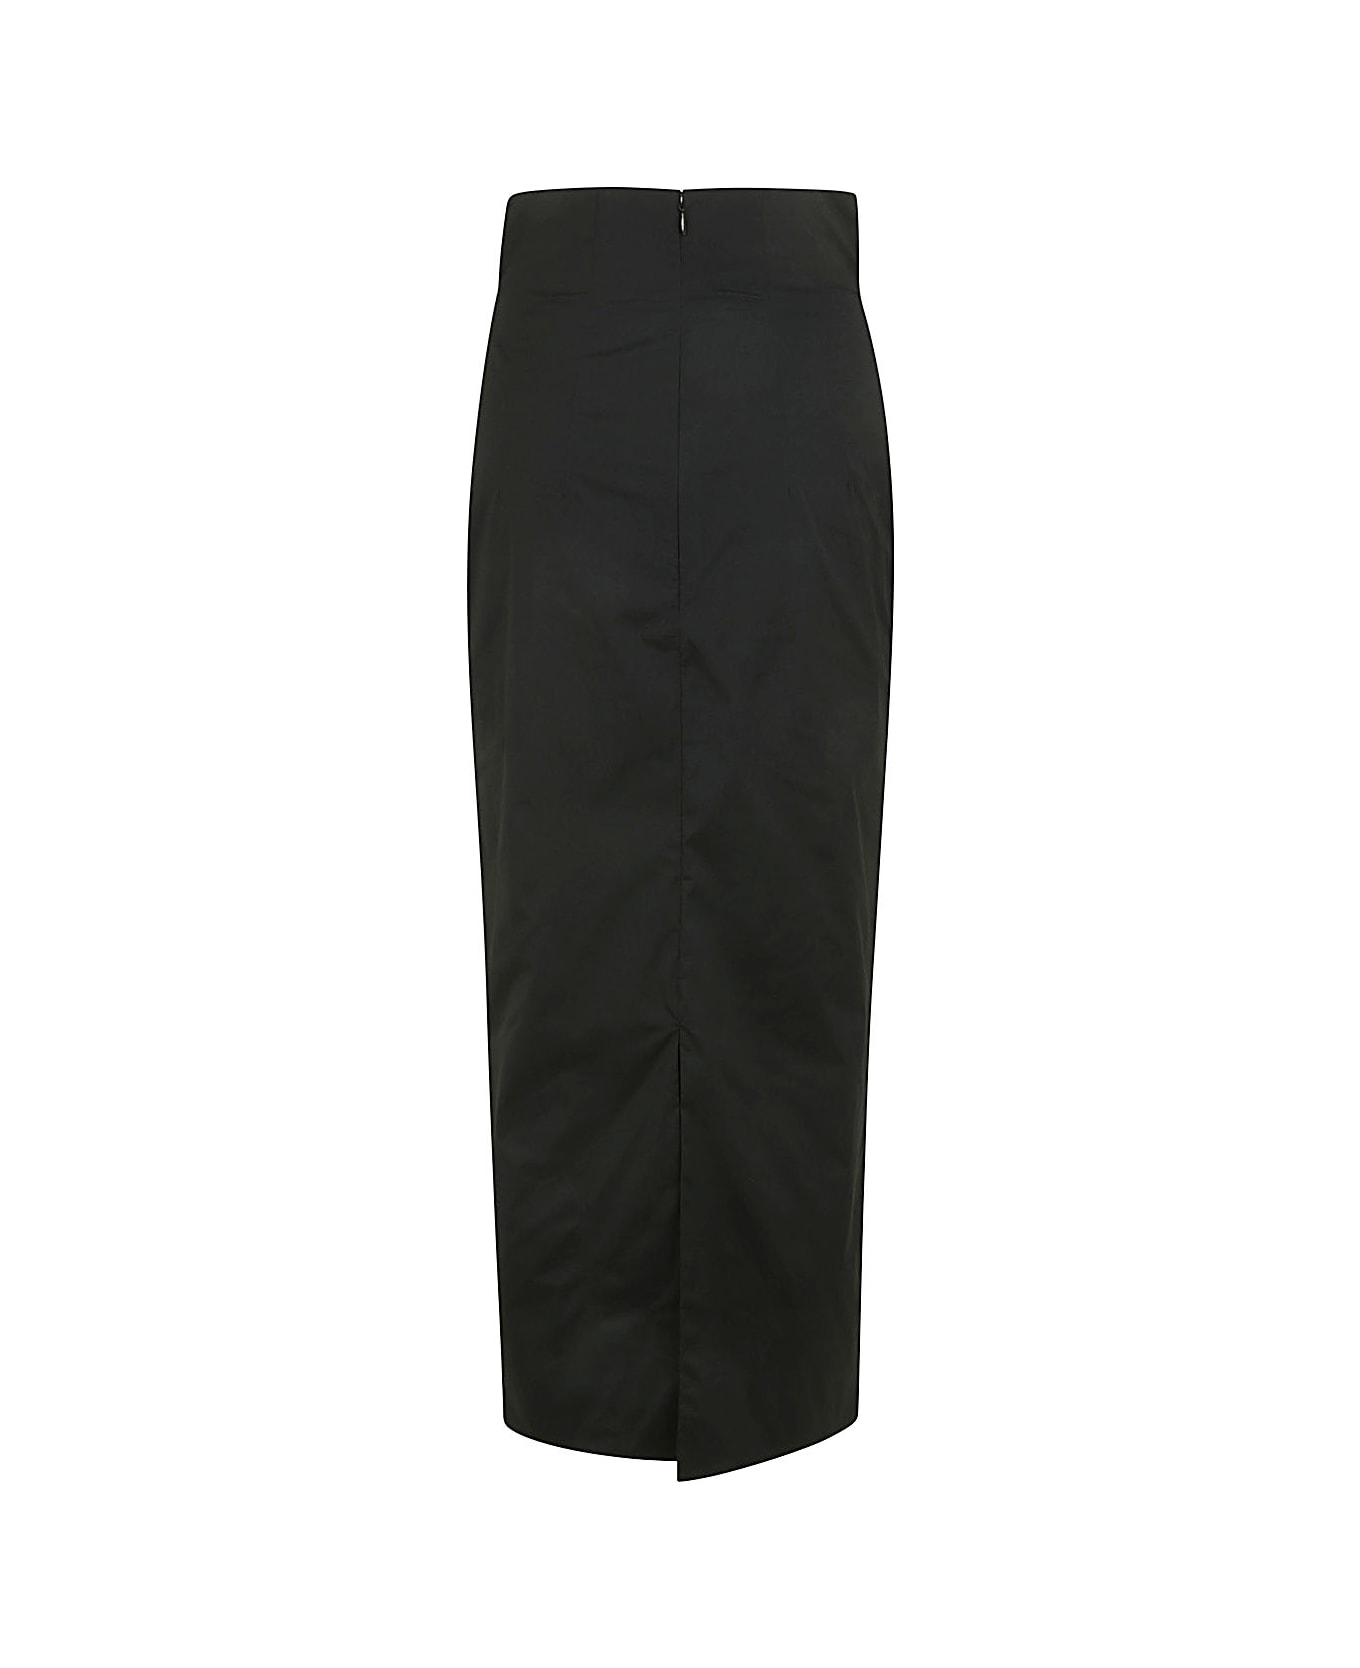 Philosophy di Lorenzo Serafini Long Pencil Skirt - Black スカート